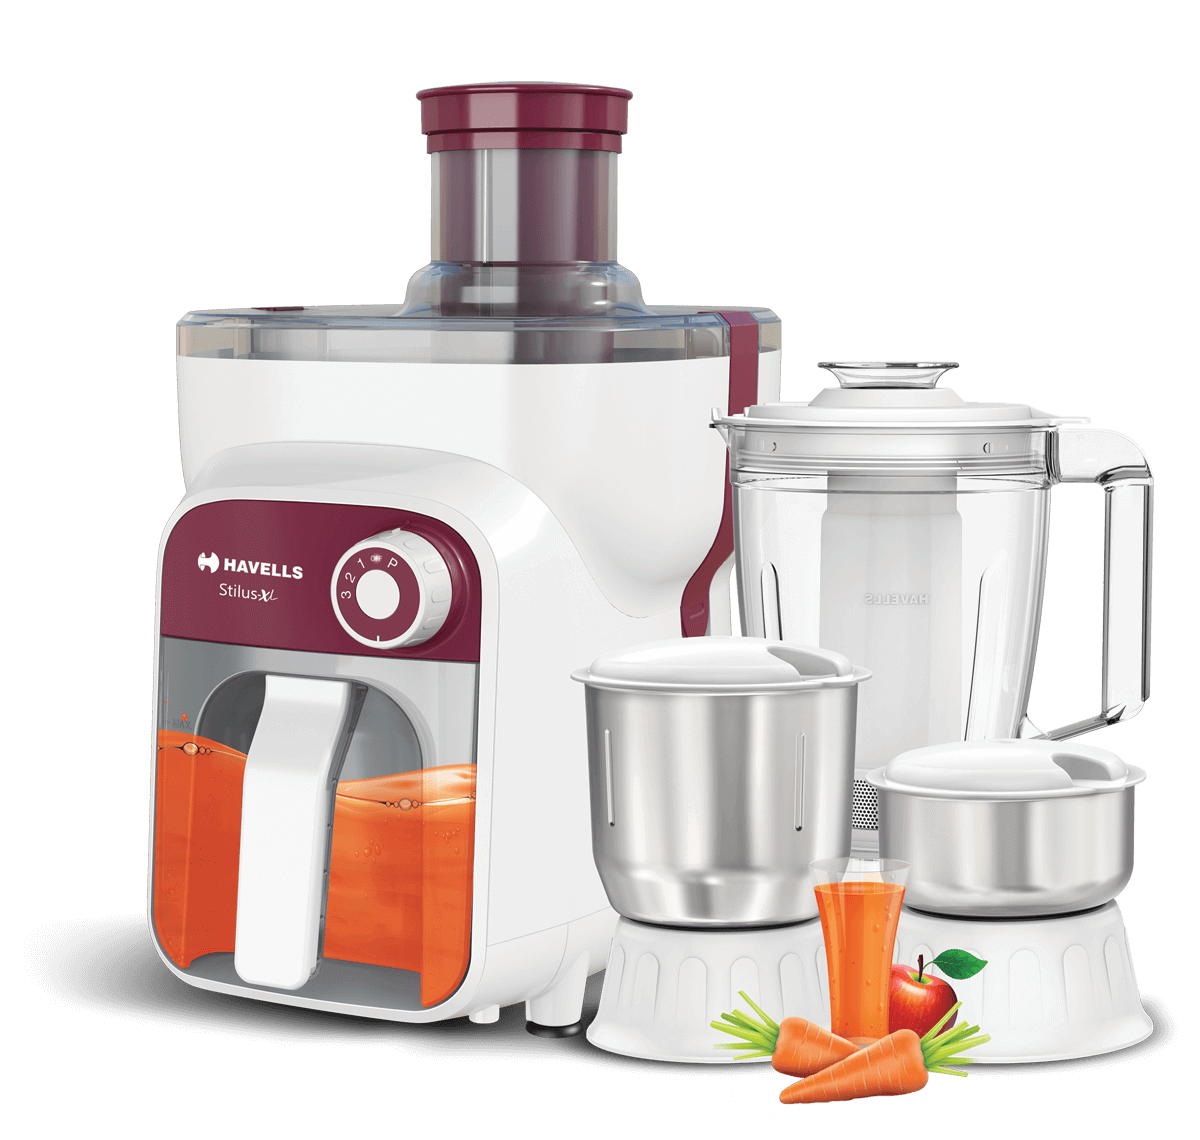 buy-juicer-mixer-grinder-stilus-xl-500-w-4-jar-with-
fruit-filter